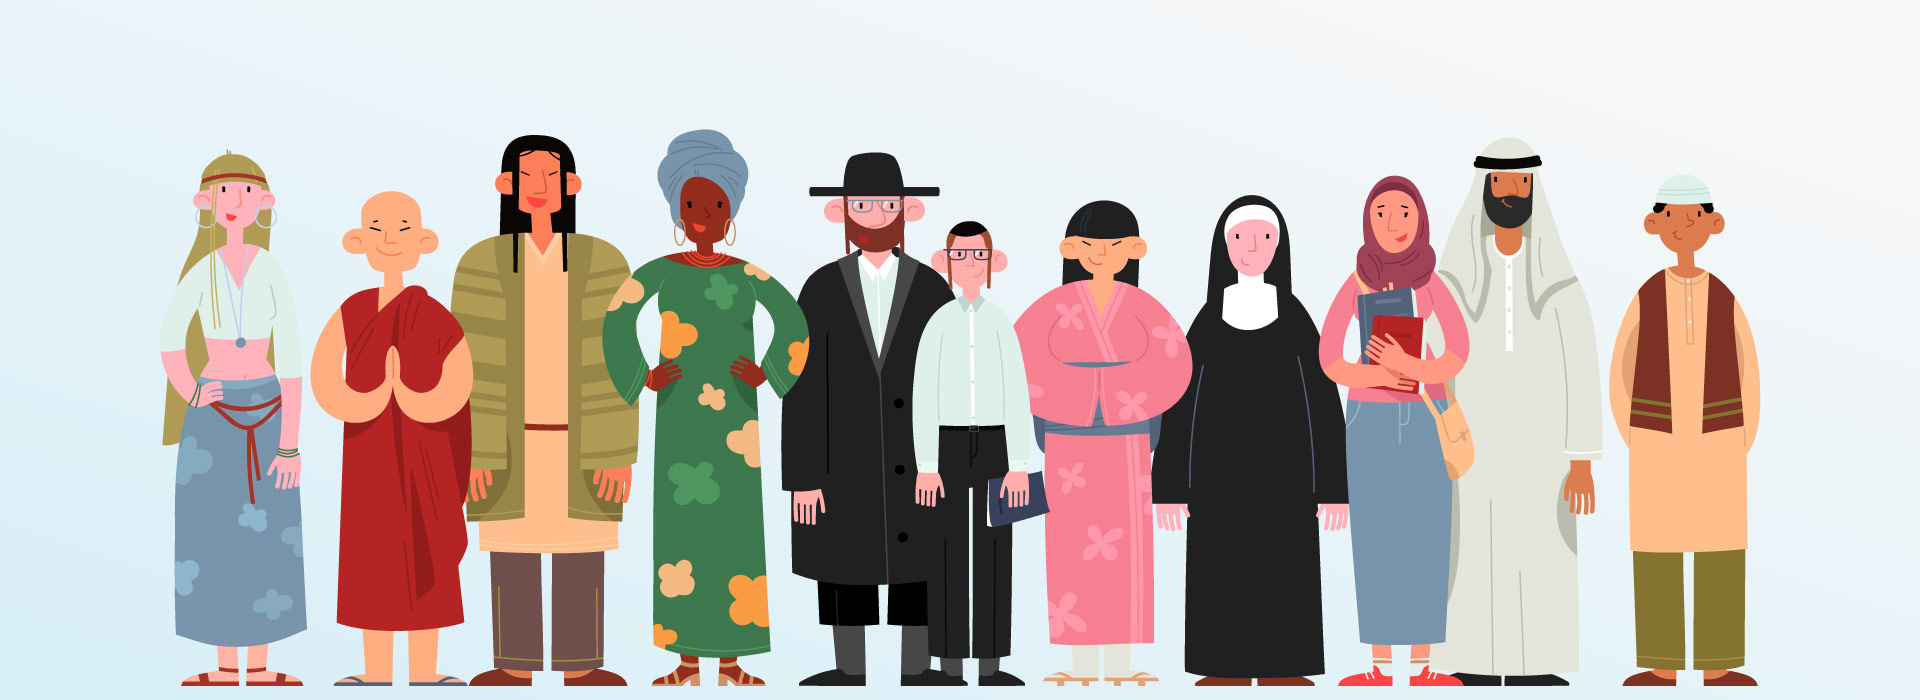 Imagem em desenho de pessoas de diversas culturas e religiões 